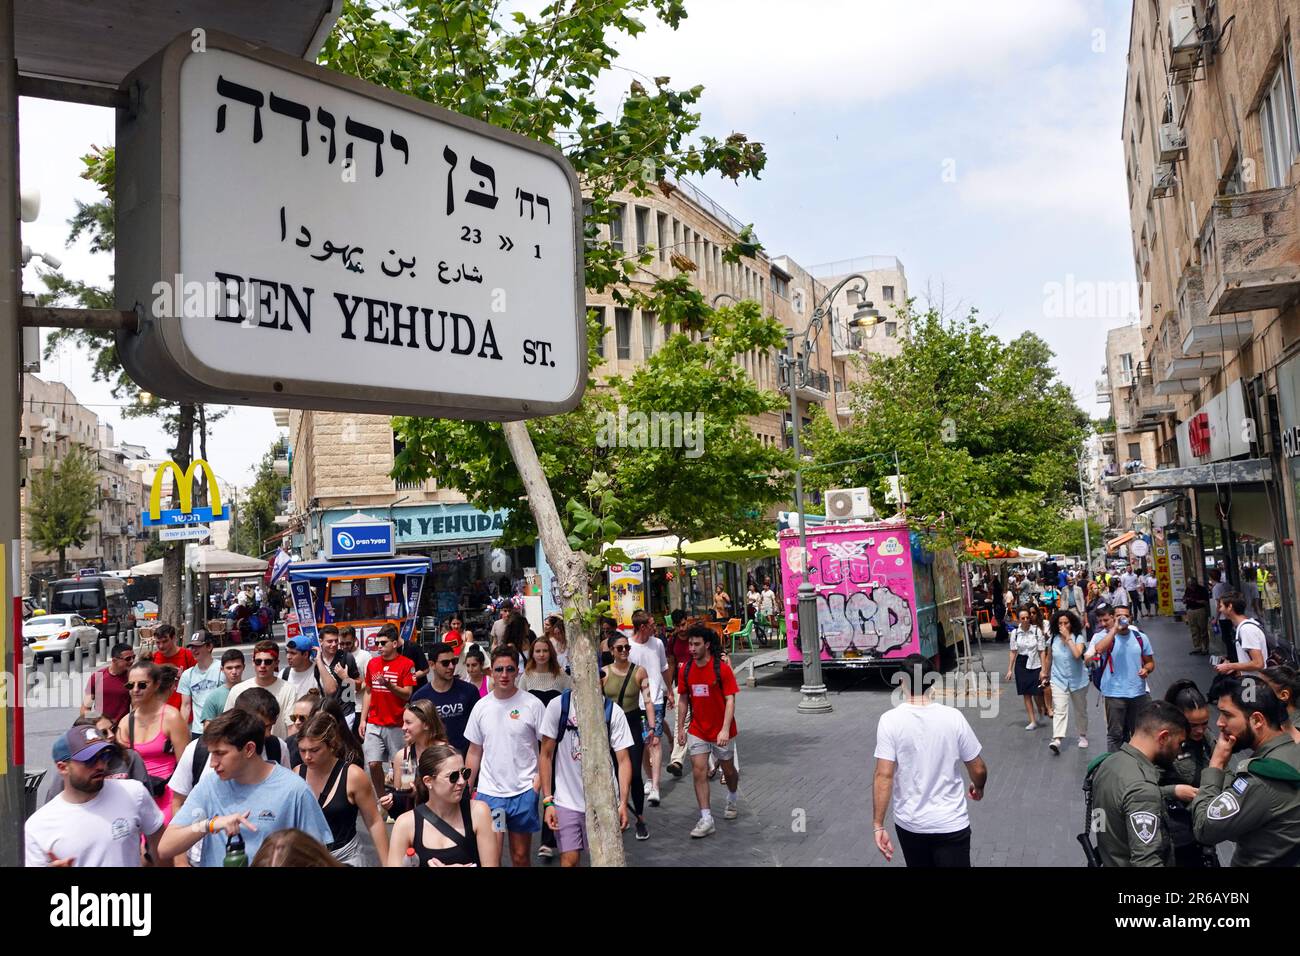 Ben Yehuda Street Roadsign Foto Stock